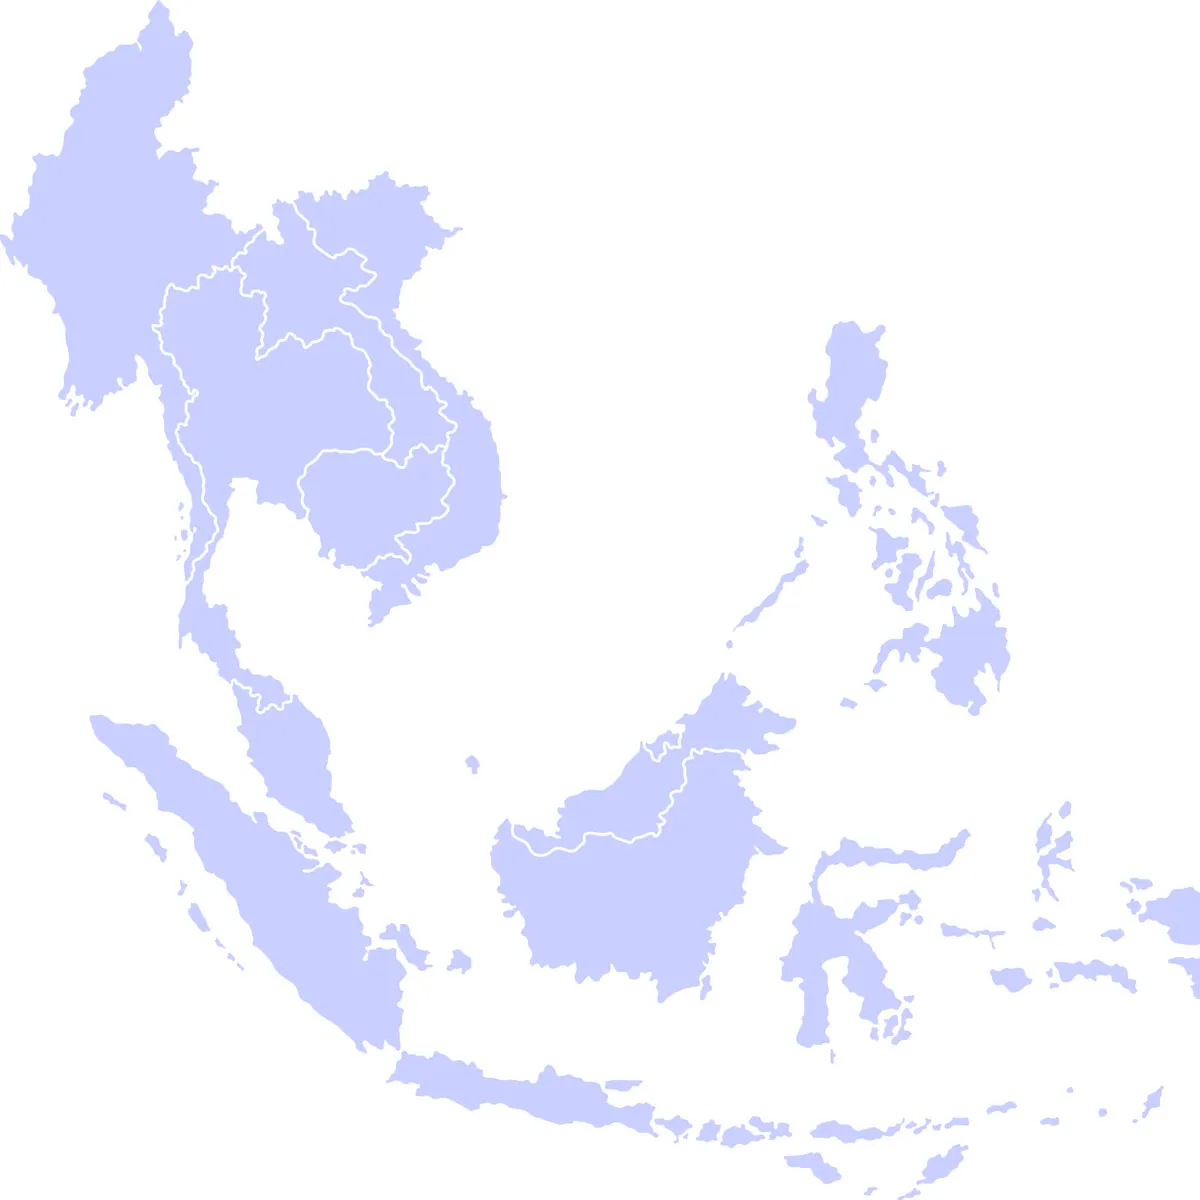 ASEAN Map